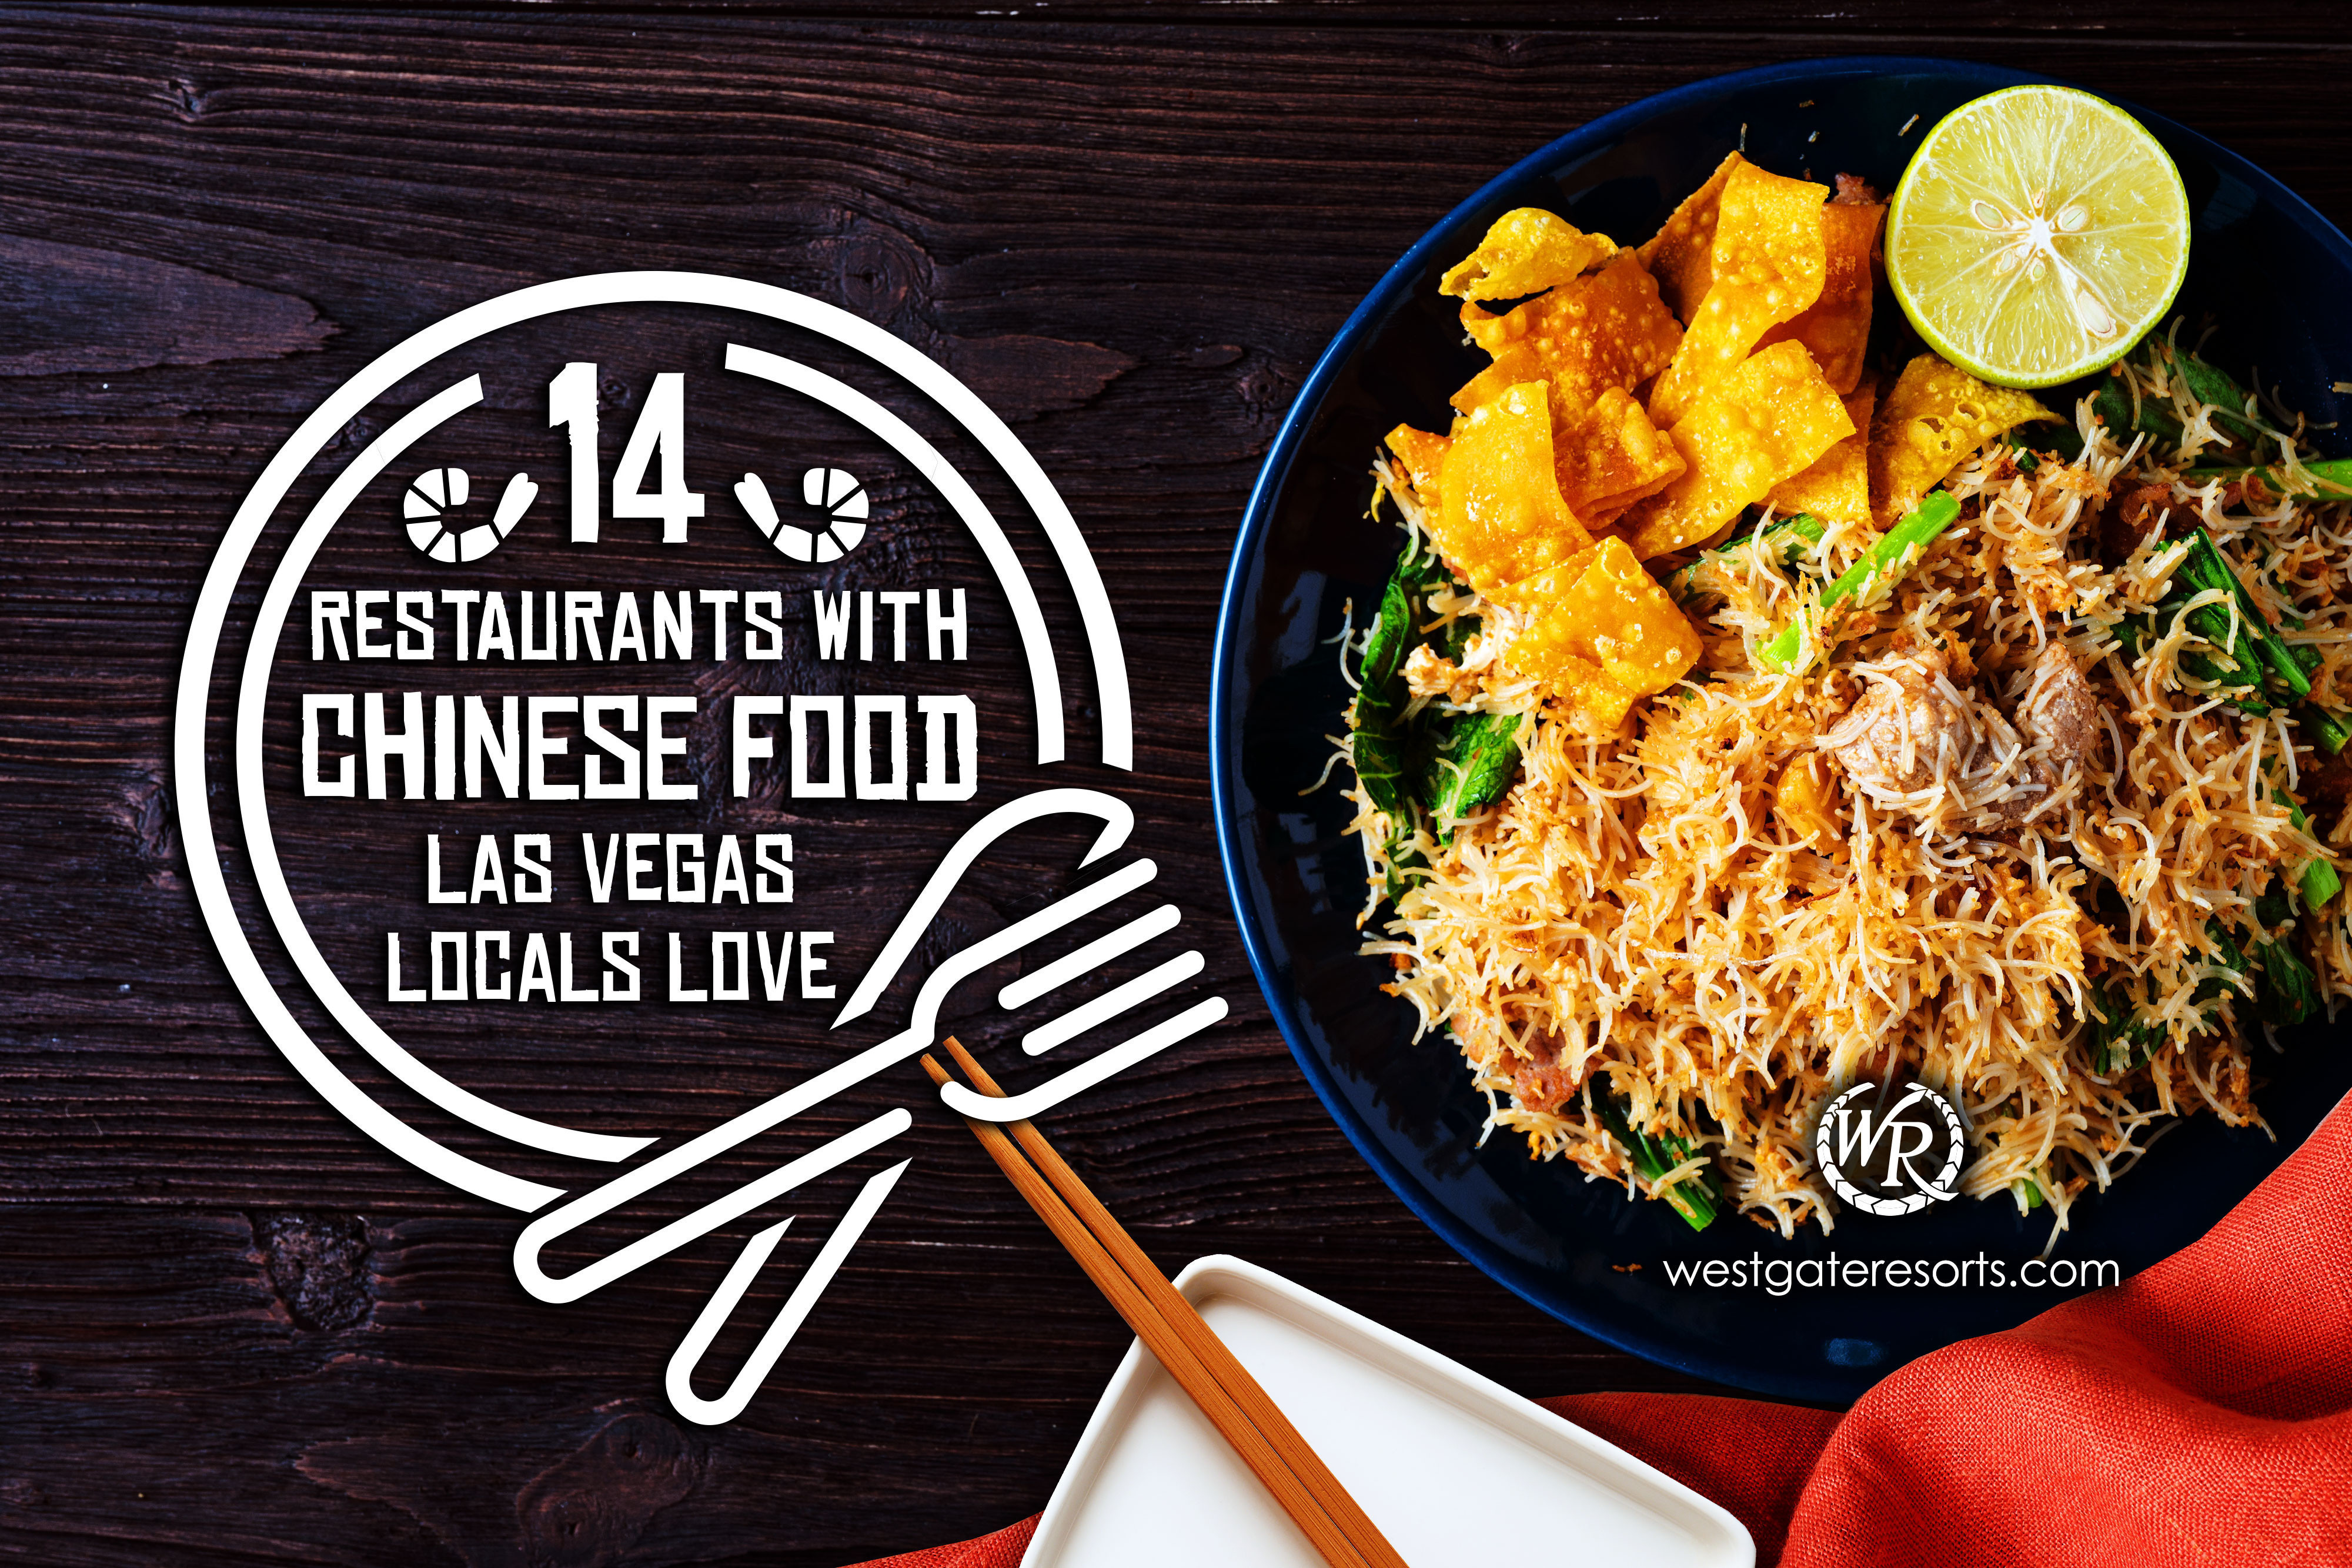 Los 14 mejores restaurantes que sirven comida china que los lugareños adoran en Las Vegas